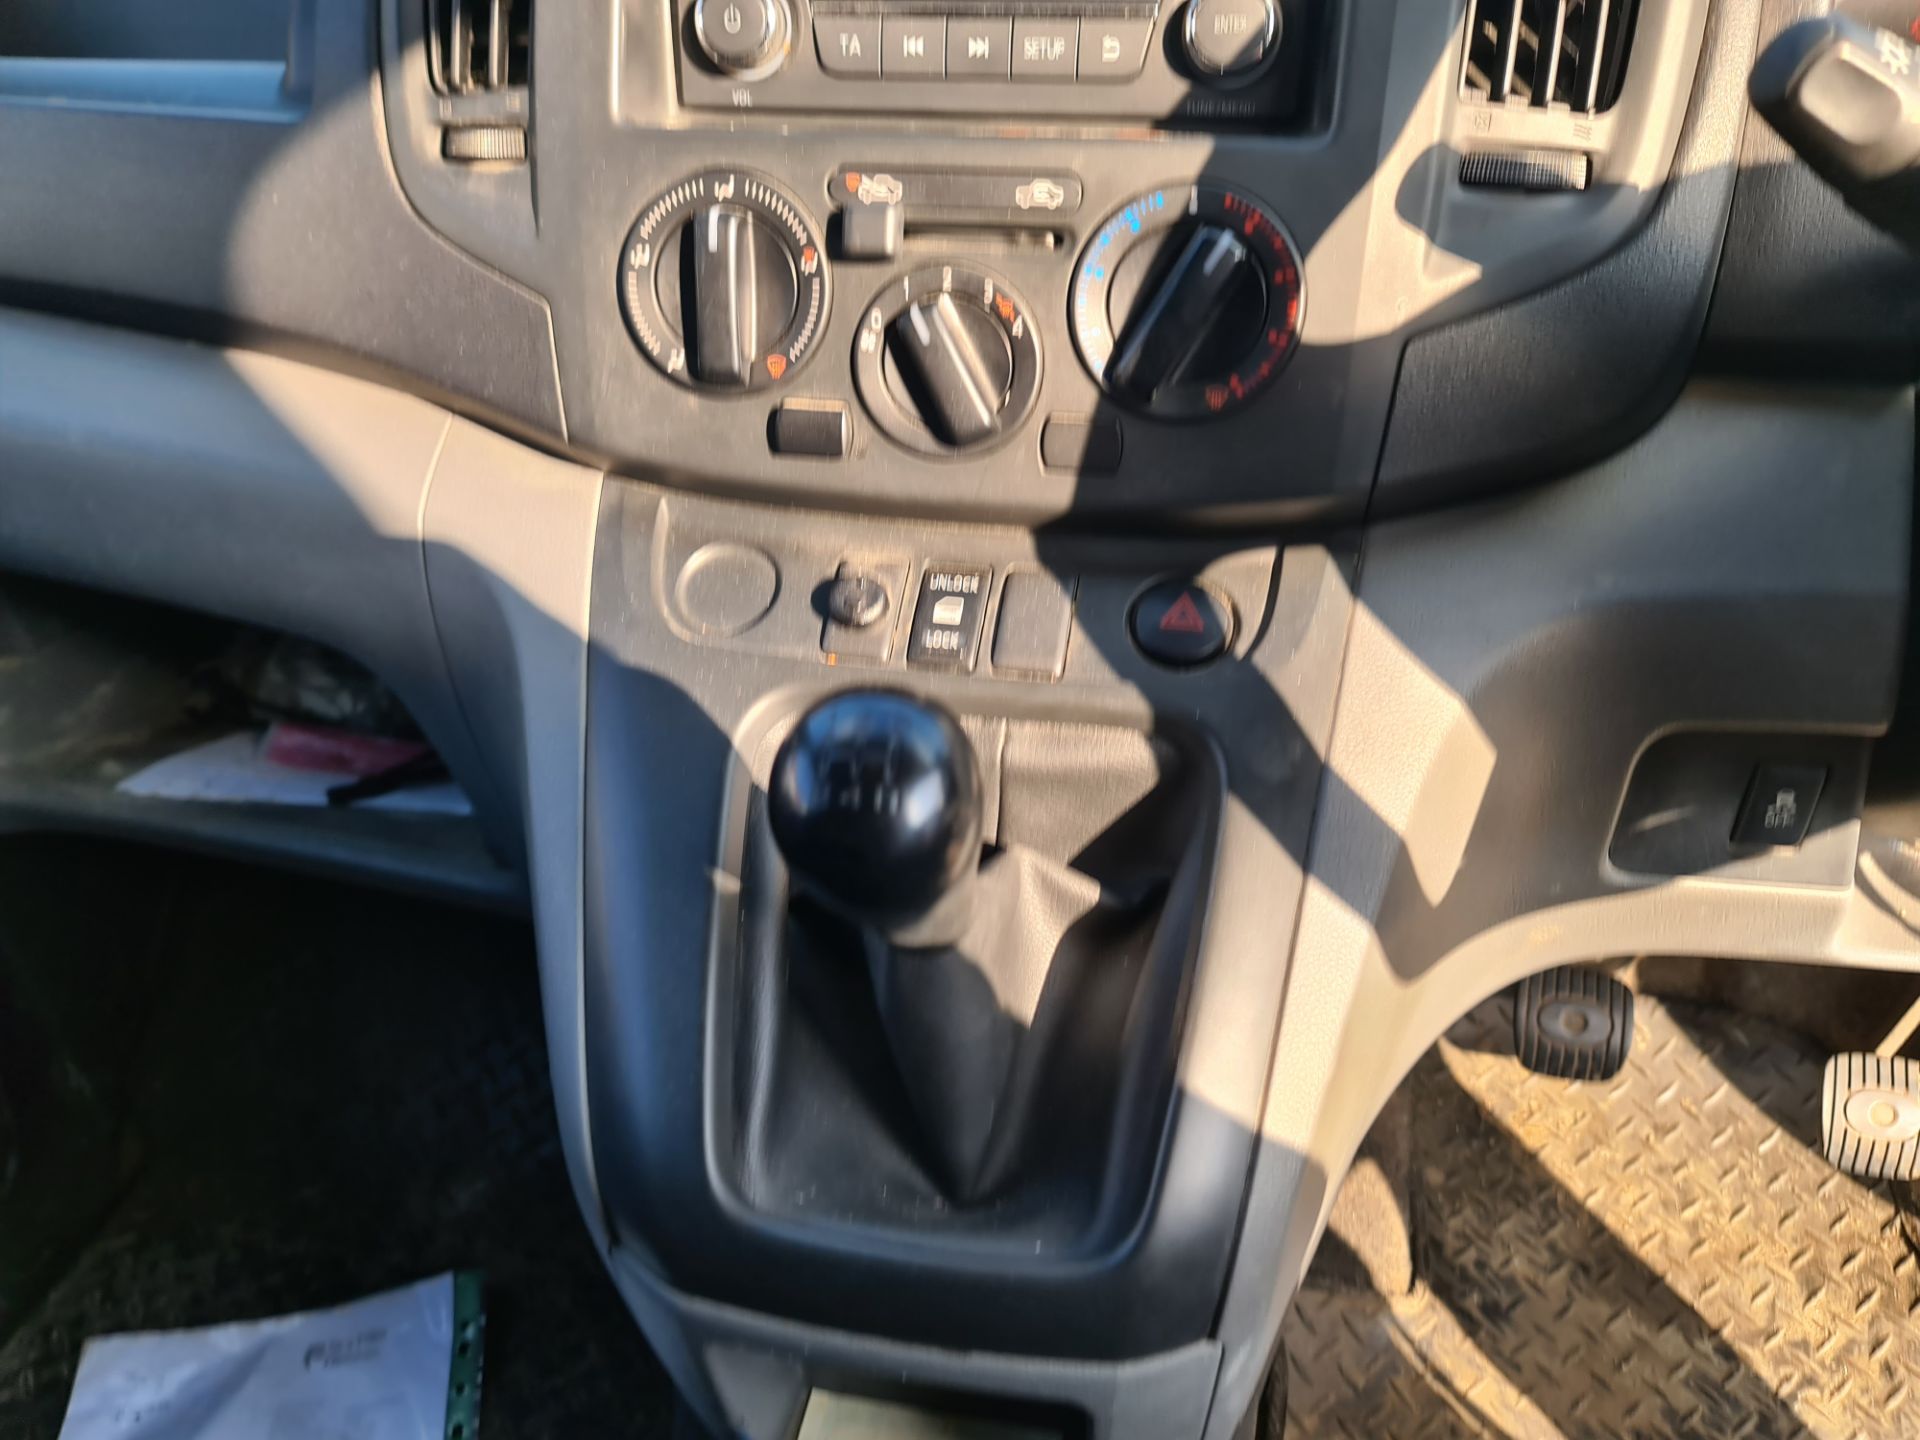 2018 Nissan NV200 Acenta DCI car derived van - Image 82 of 93